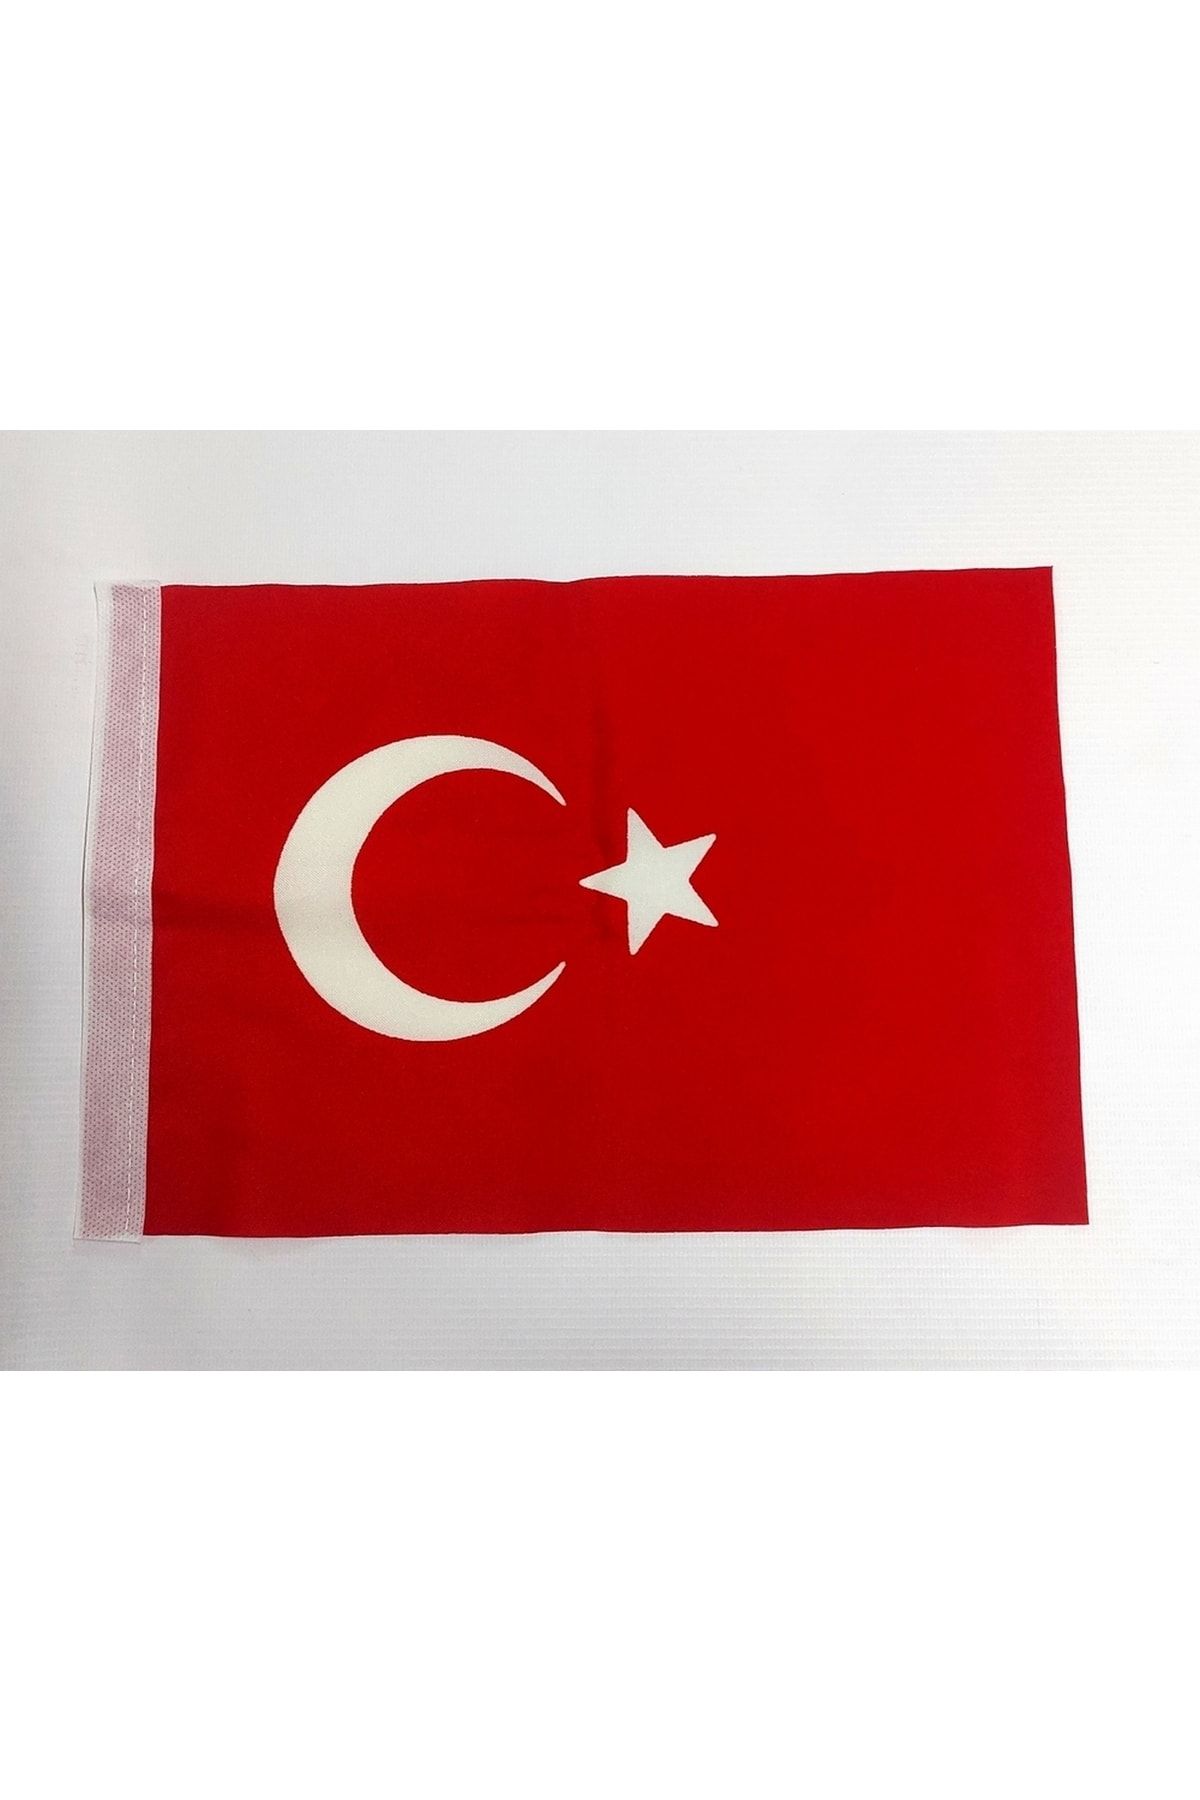 KALE Türk Bayrağı 20 X30